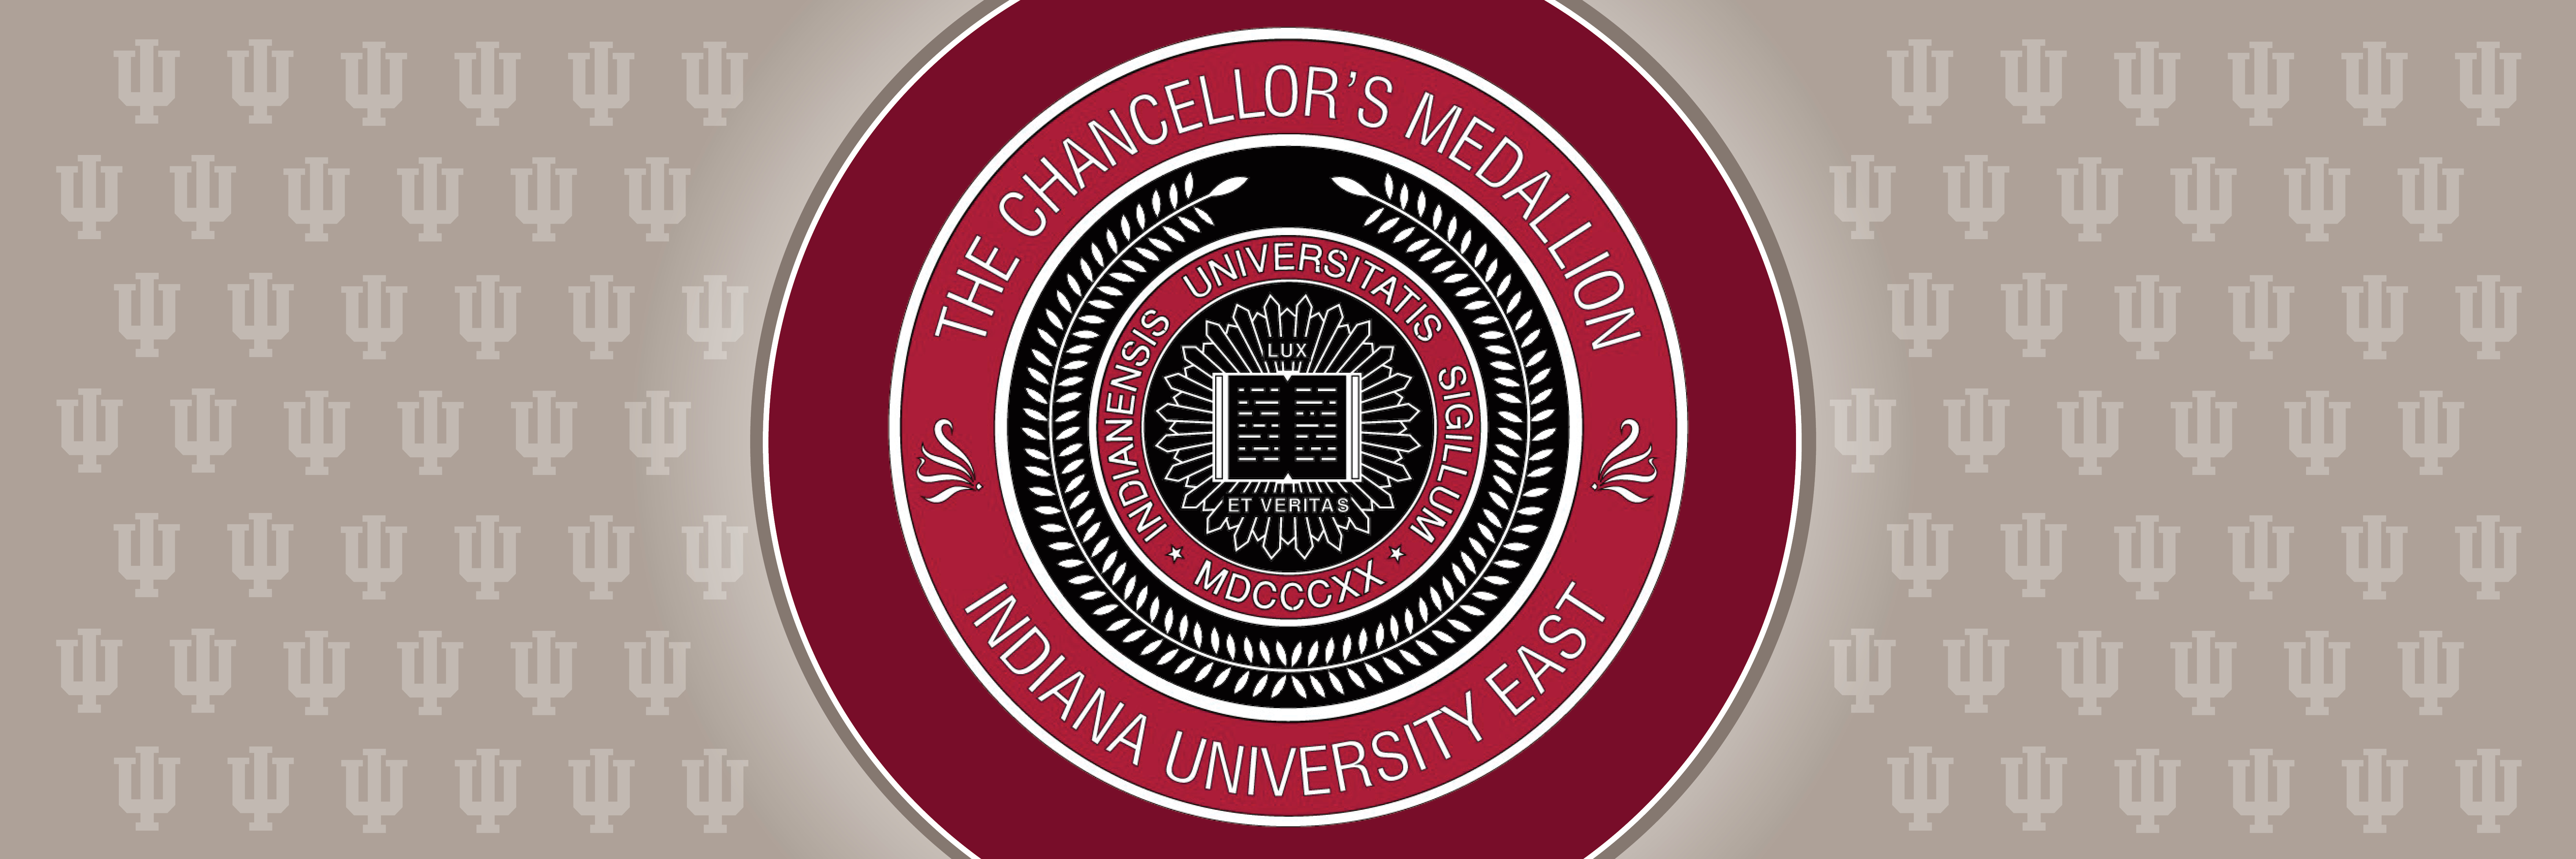 Chancellor's Medallion design.